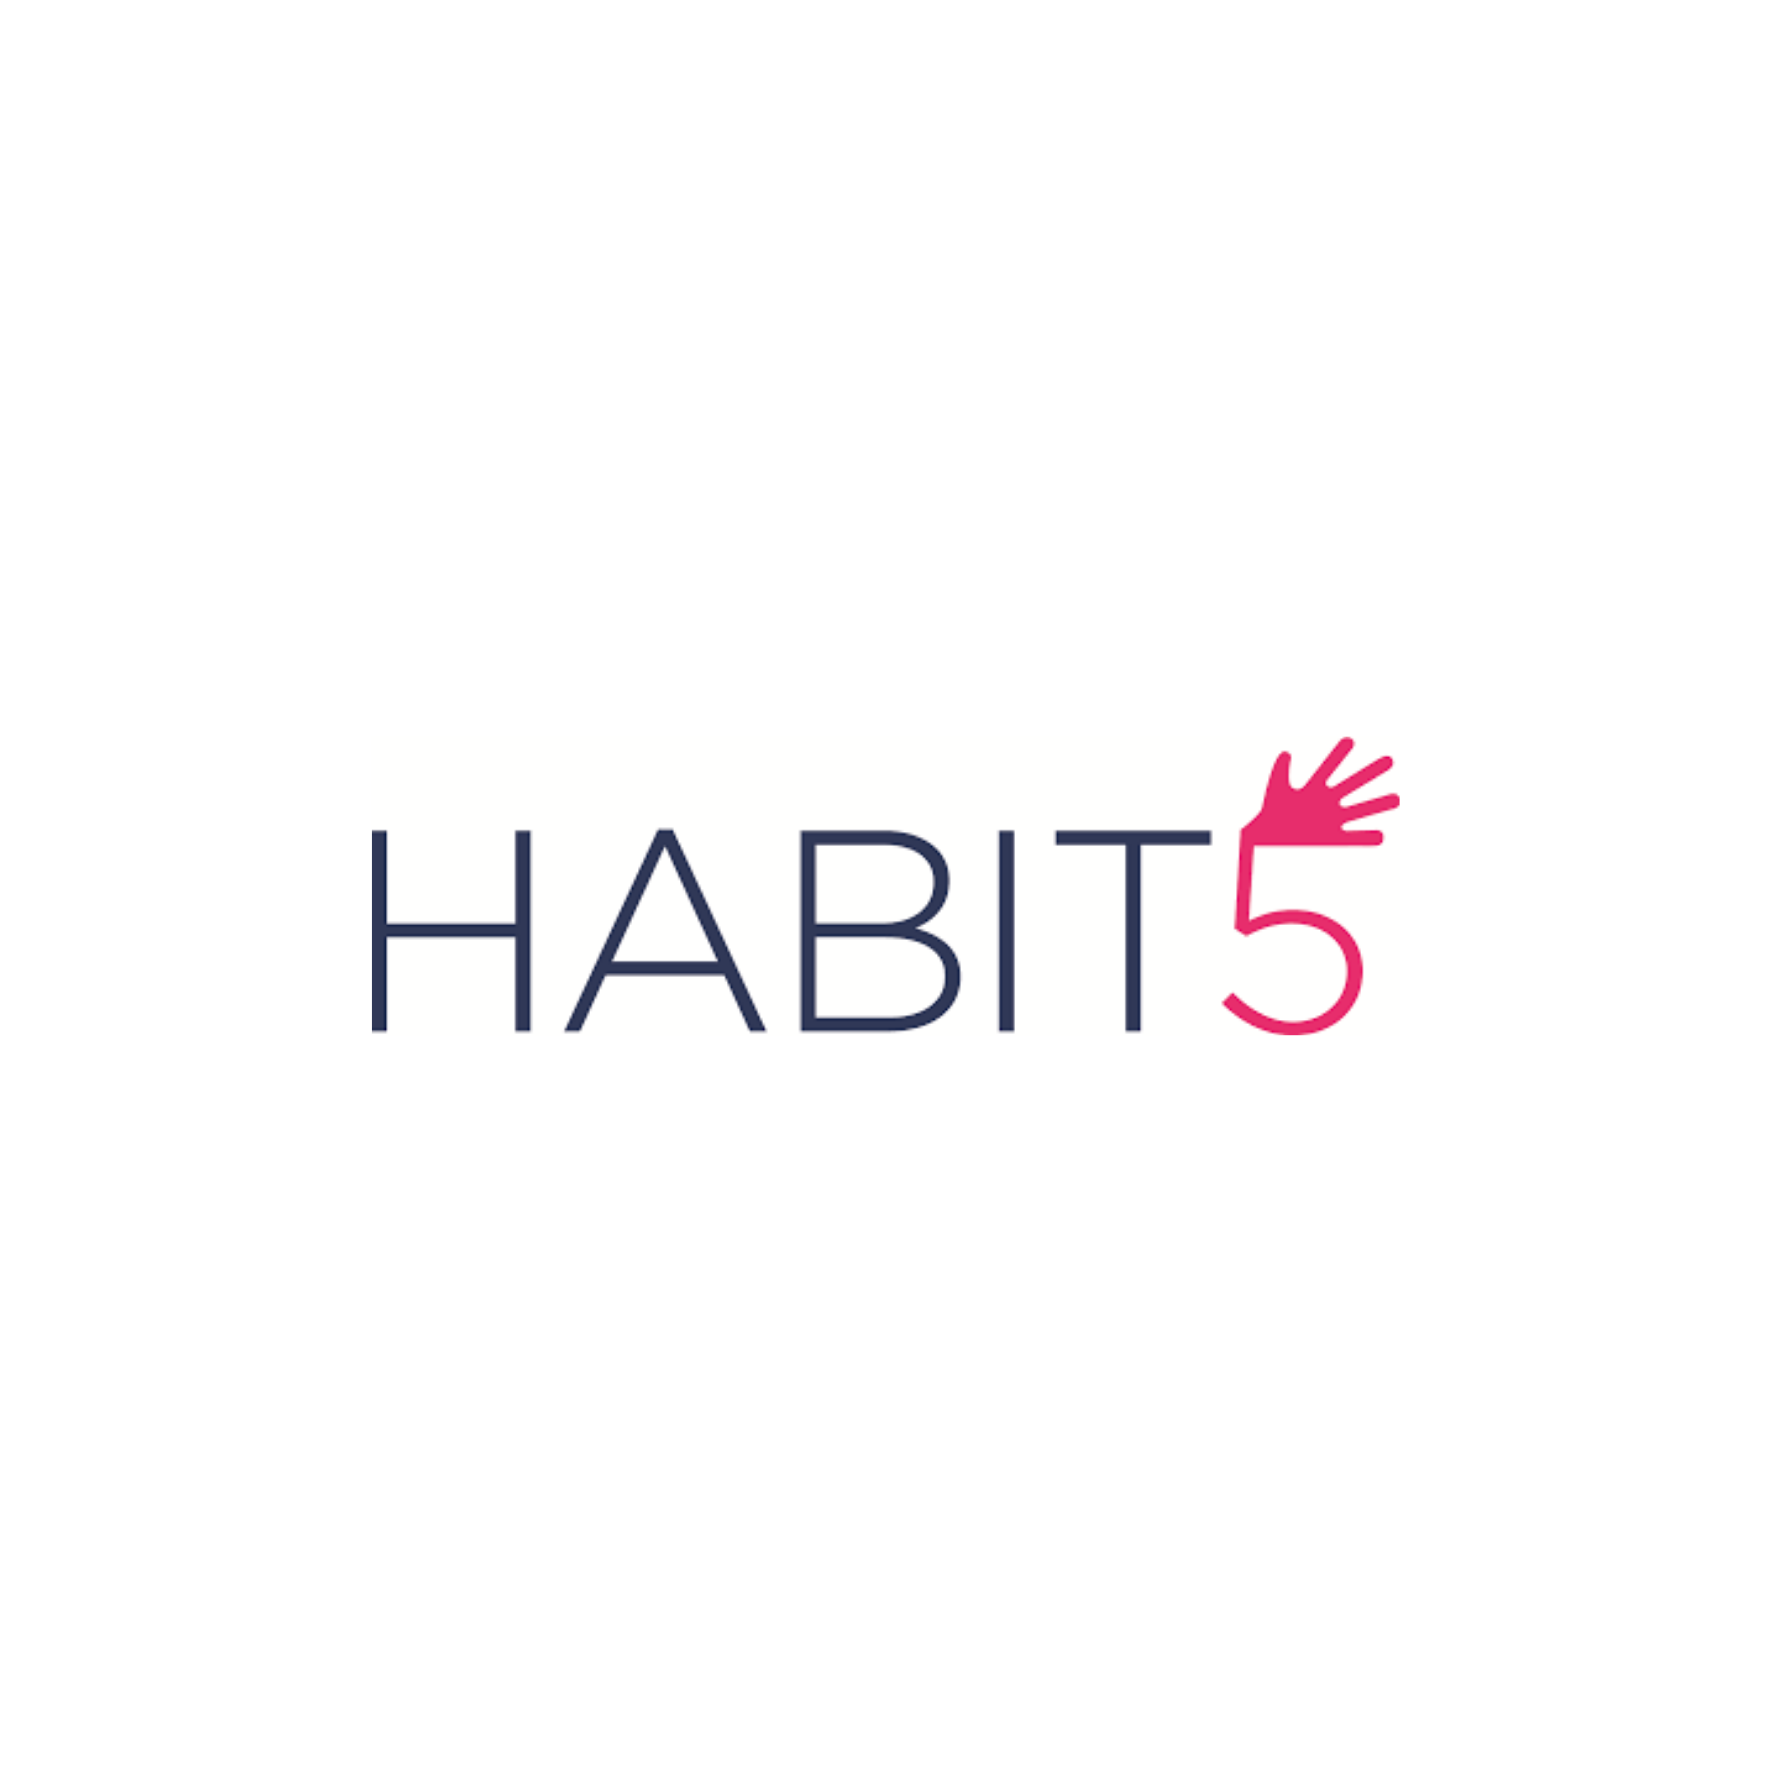 Habit5 Logo